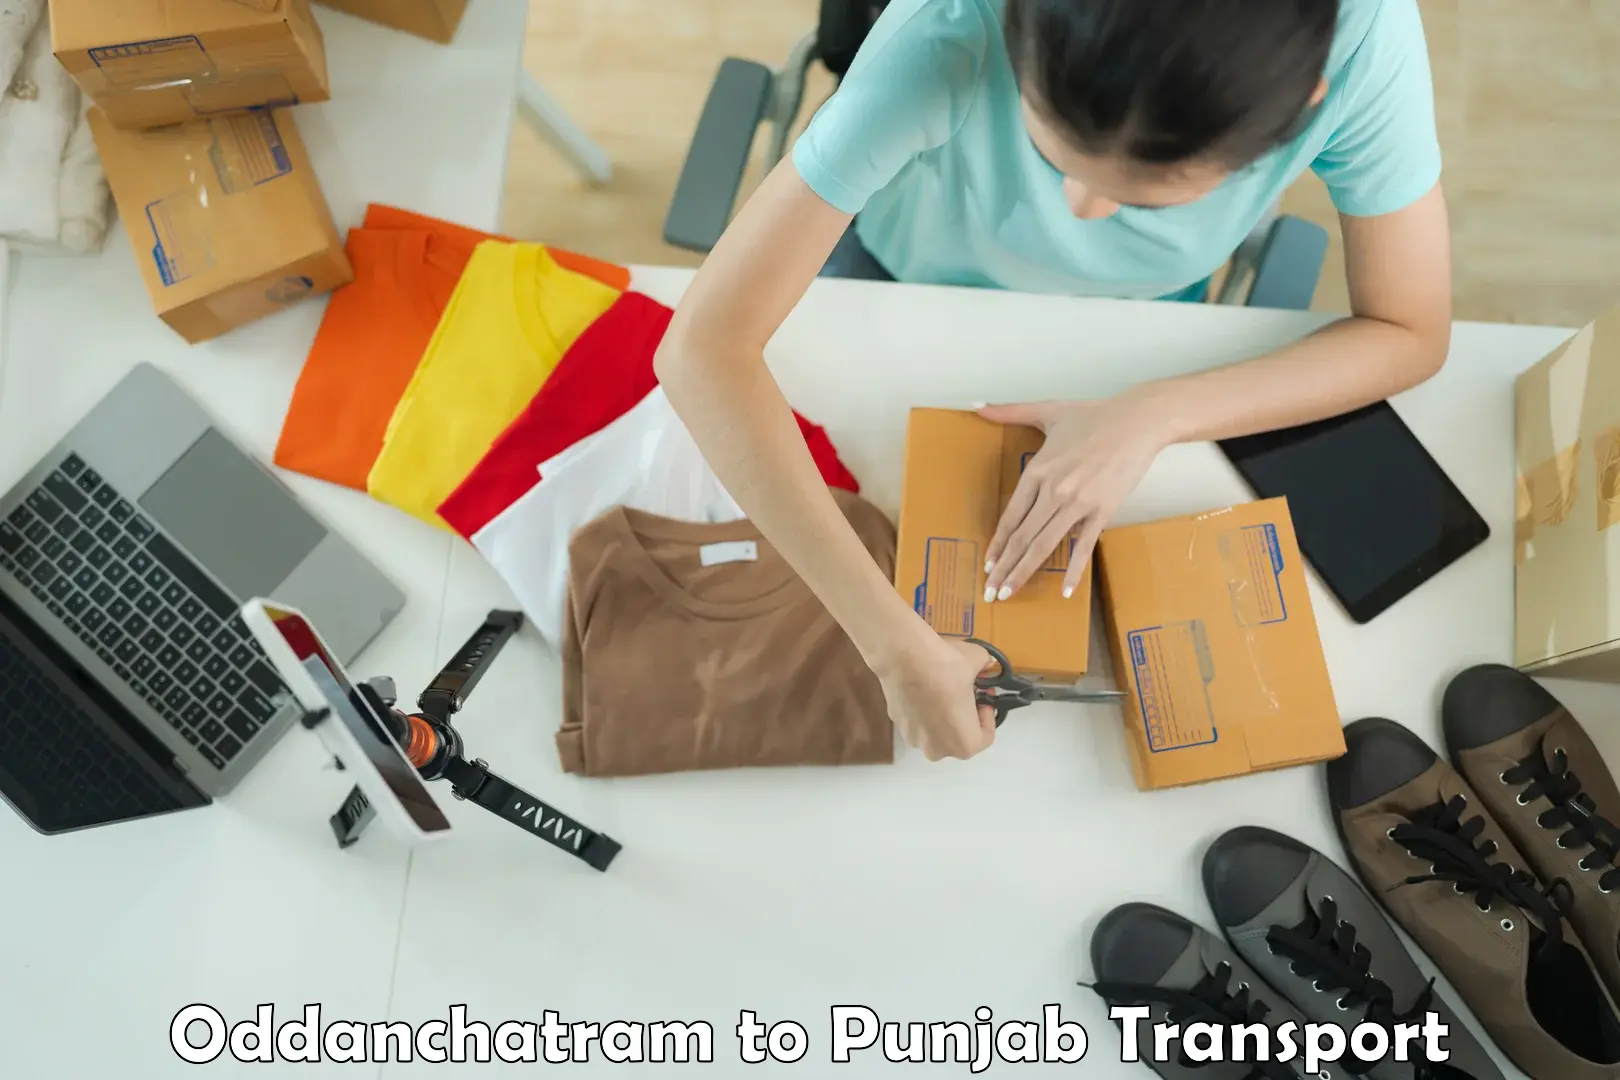 Transport shared services Oddanchatram to NIT Jallandhar